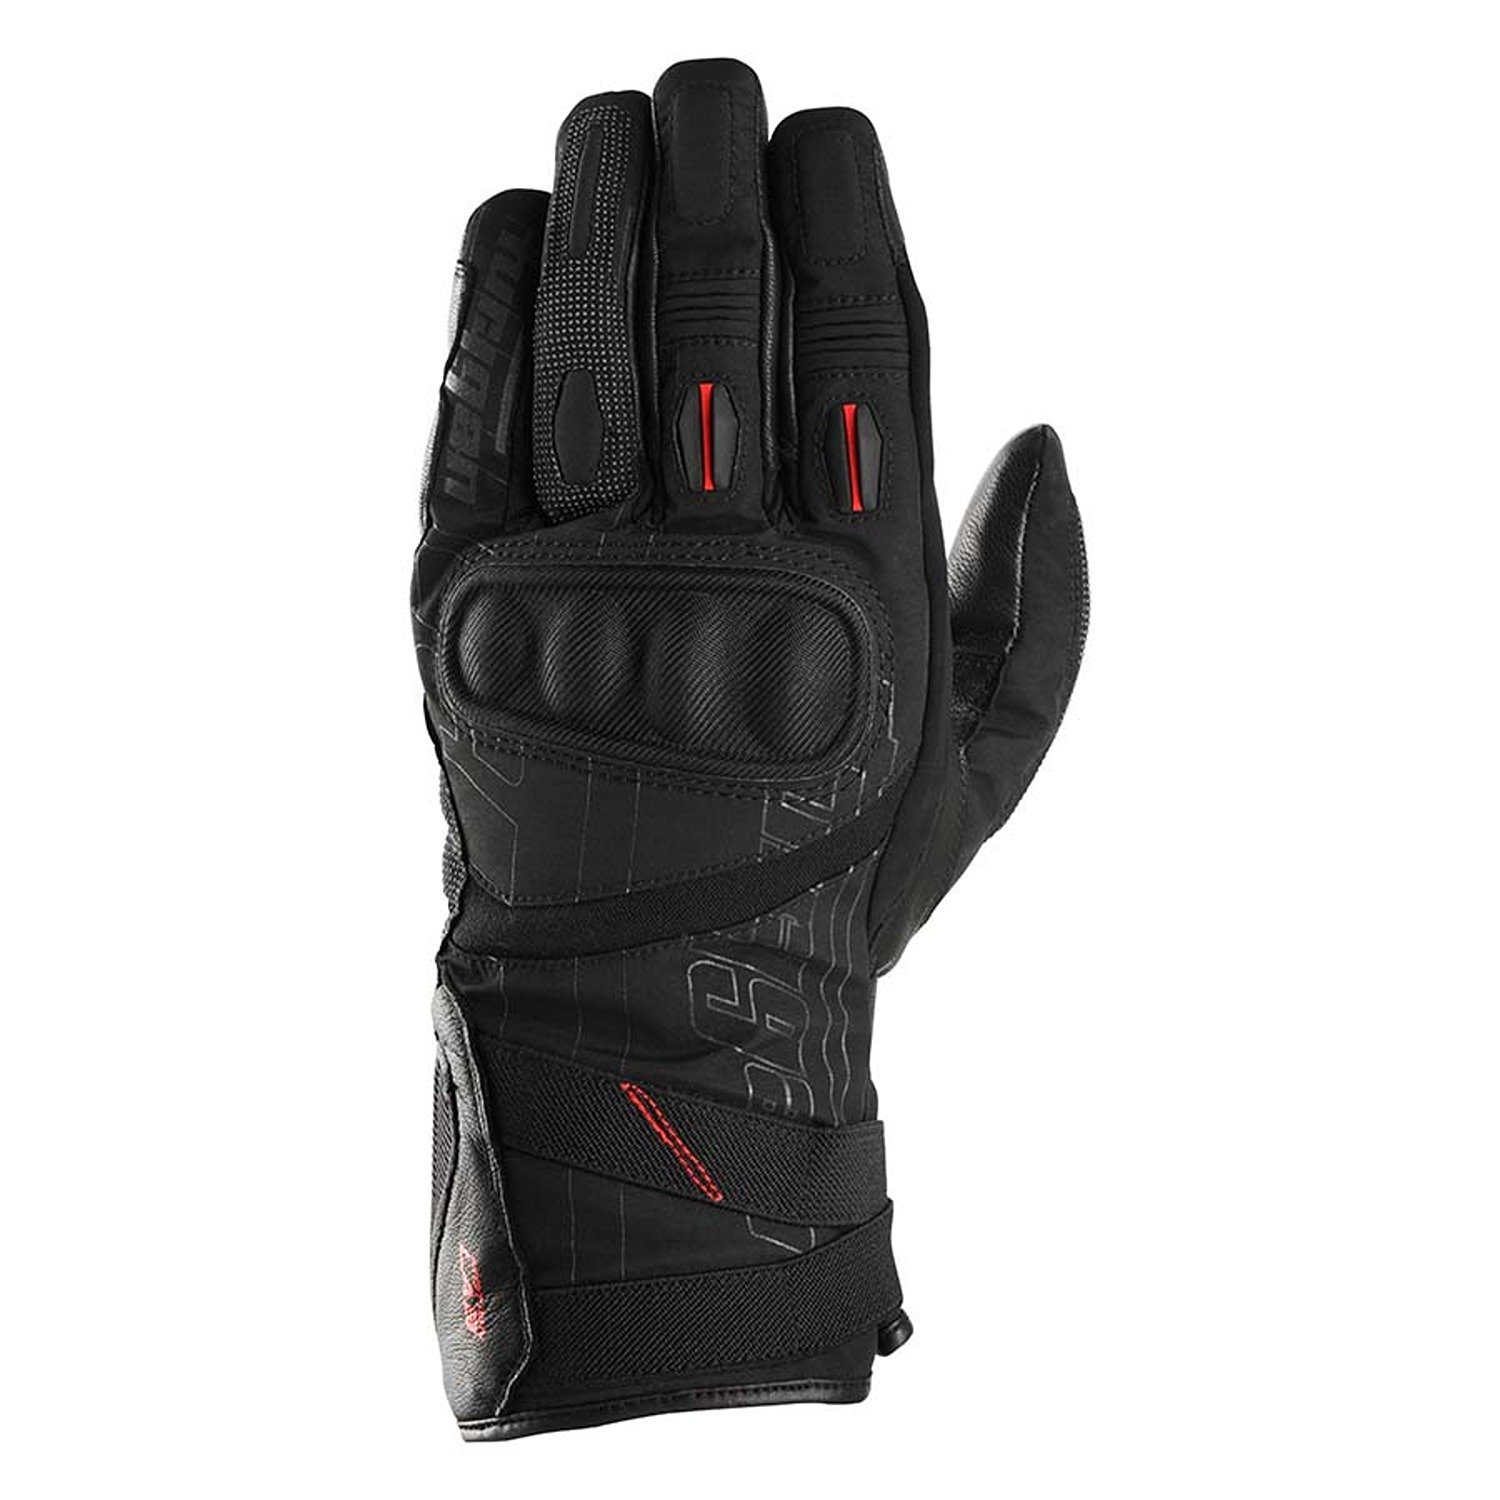 Image of Furygan Nomad Gloves Black Größe S